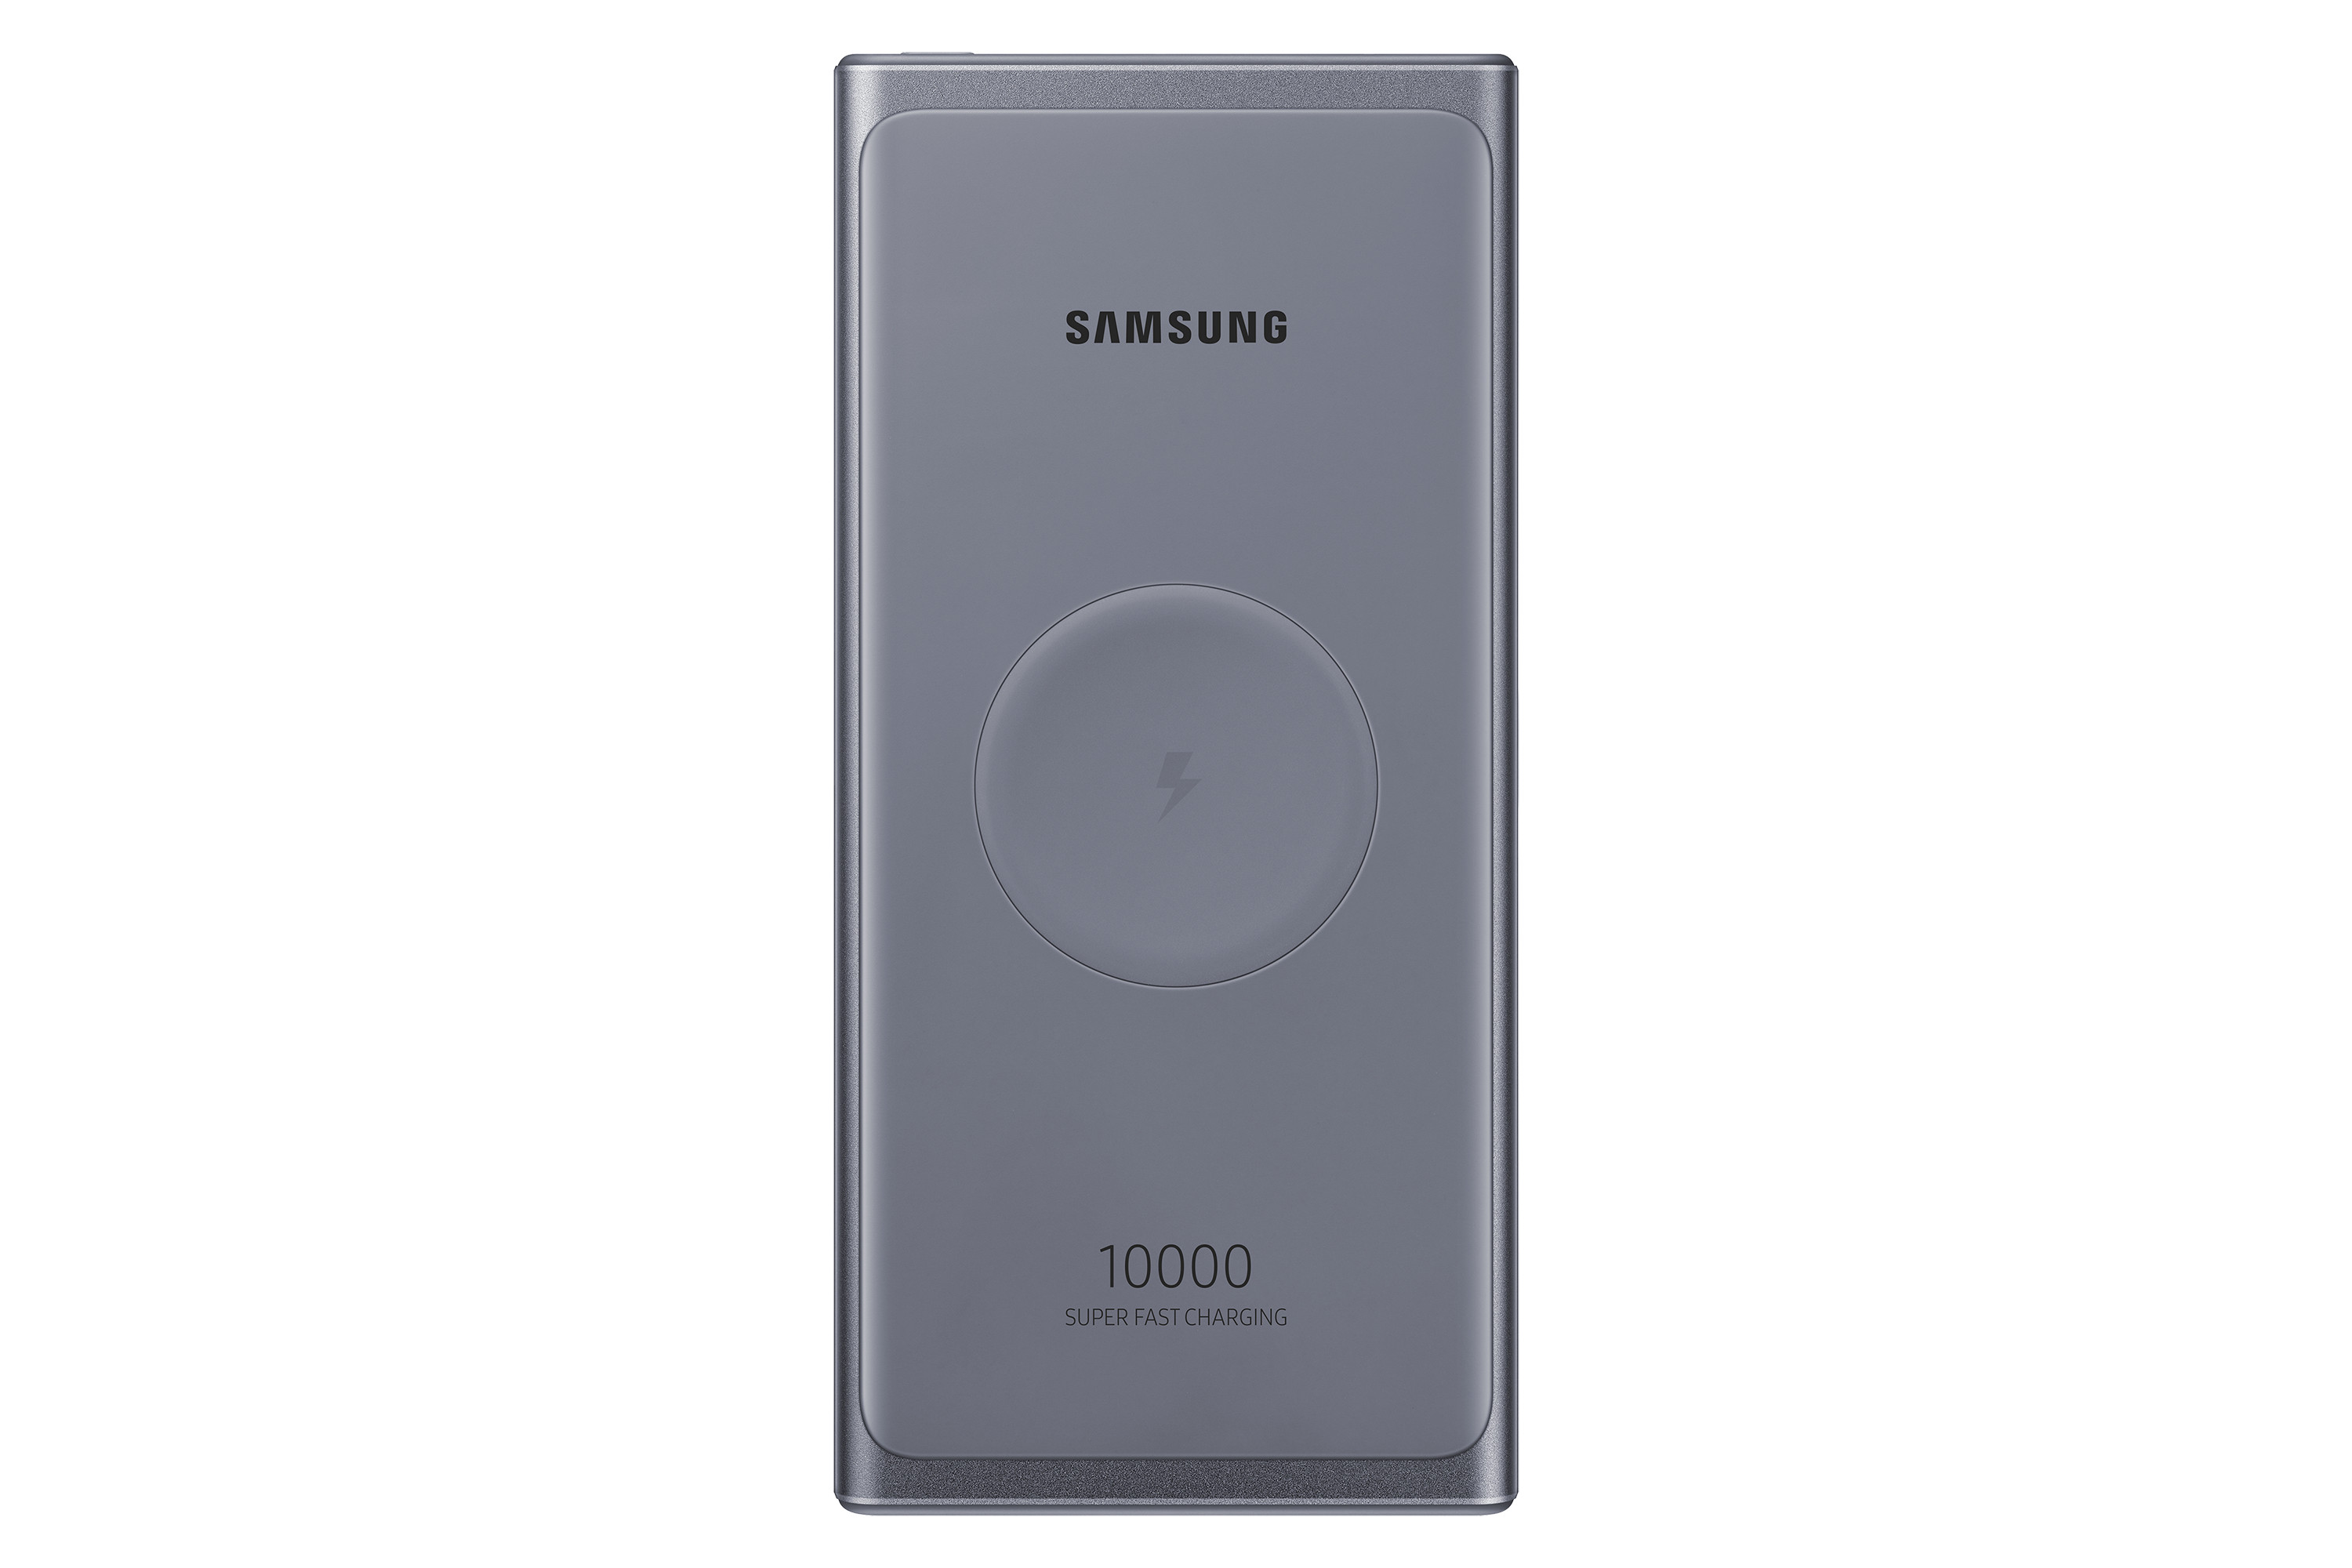 Power Bank Samsung EB-U3300XJEGEU Batteria Portatile Wireless 10000 mAh Grigio Ricondizionato come Grado C